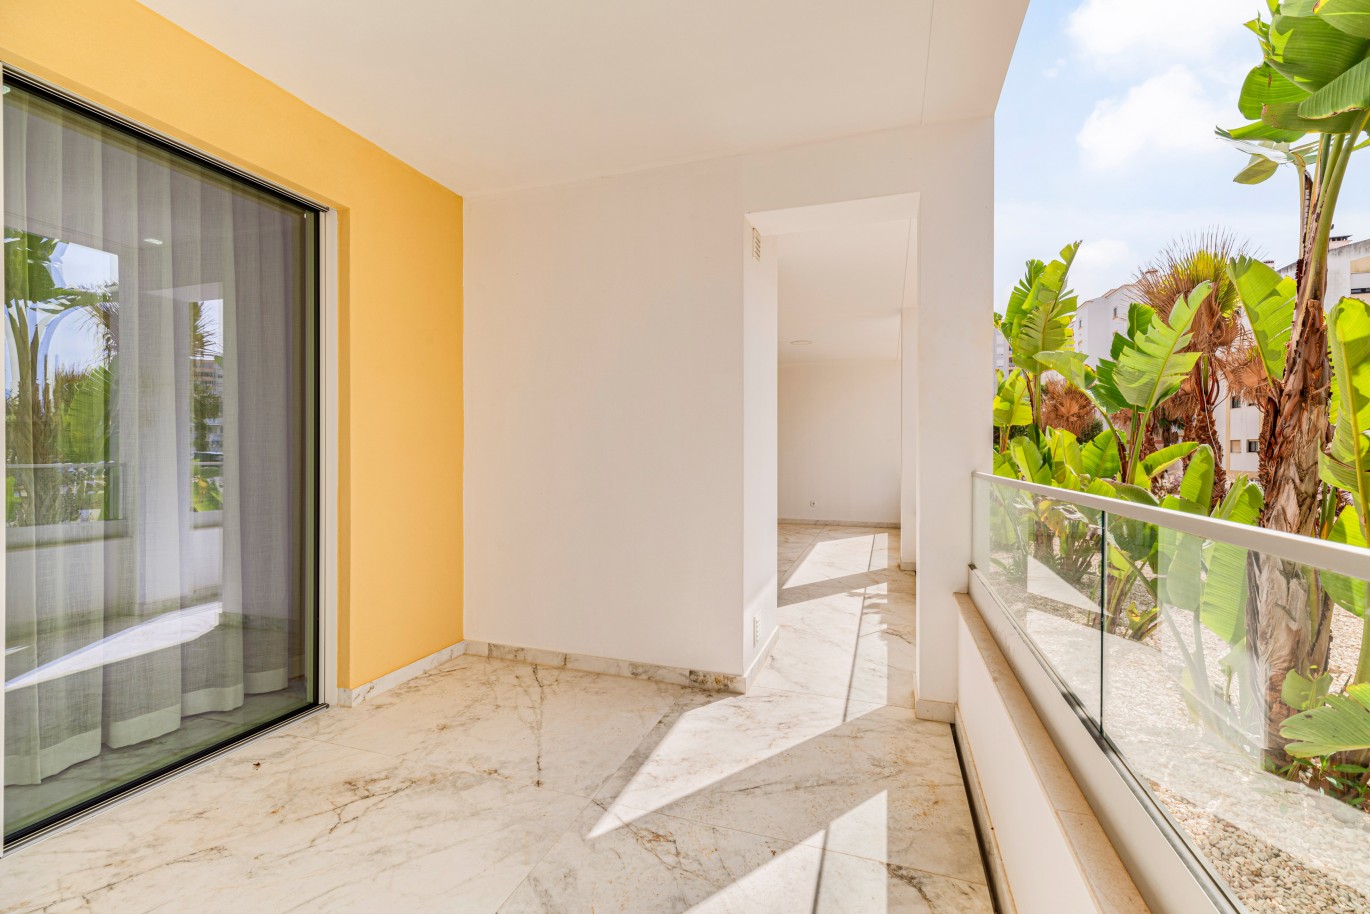 Apartamento, com terraço, para venda, em Lagos, Algarve_238150